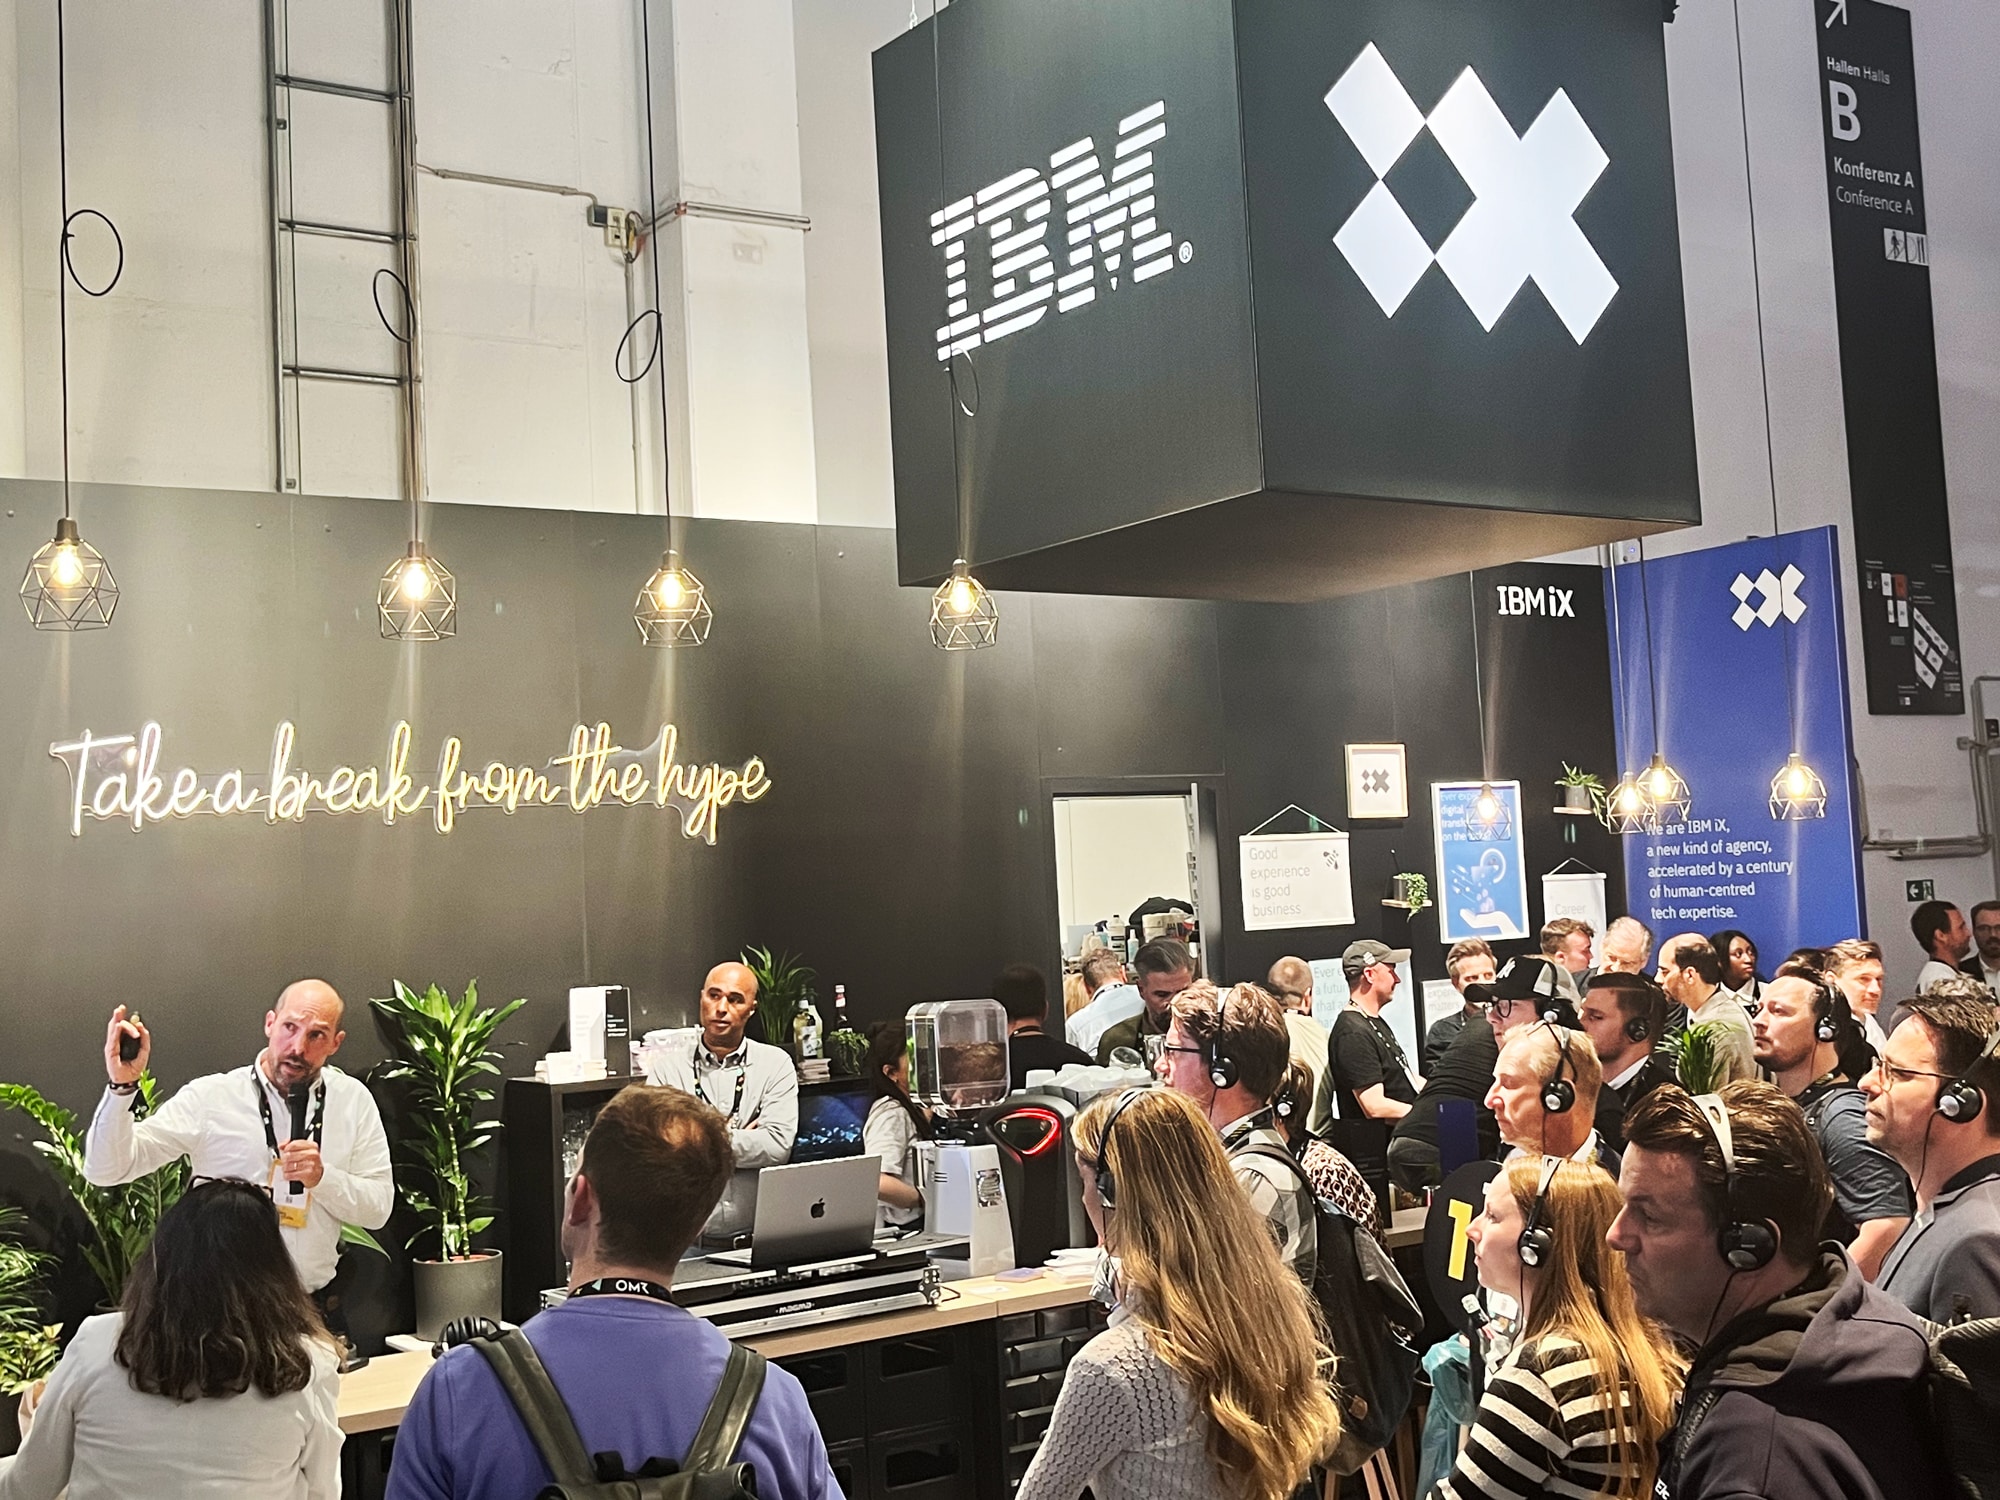 Jan Pilhar am Stand von IBM iX auf der OMR während seines Bartalks